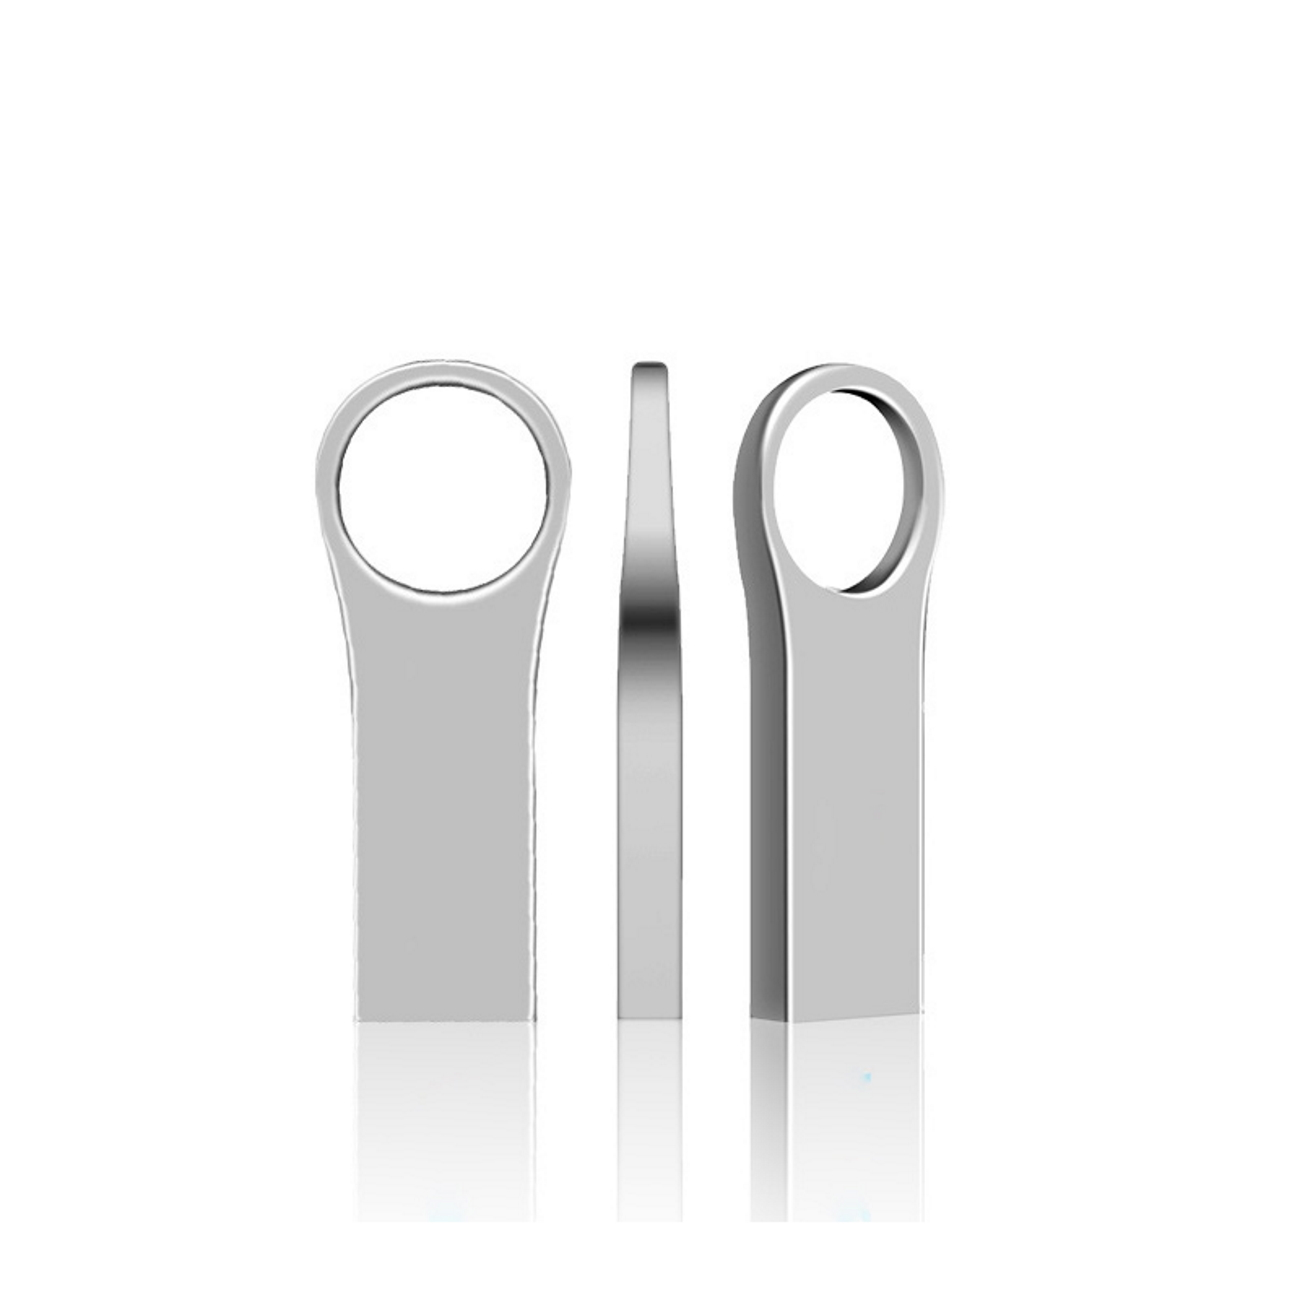 2 GERMANY ® USB (Silber, GB) U66 Metall USB-Stick